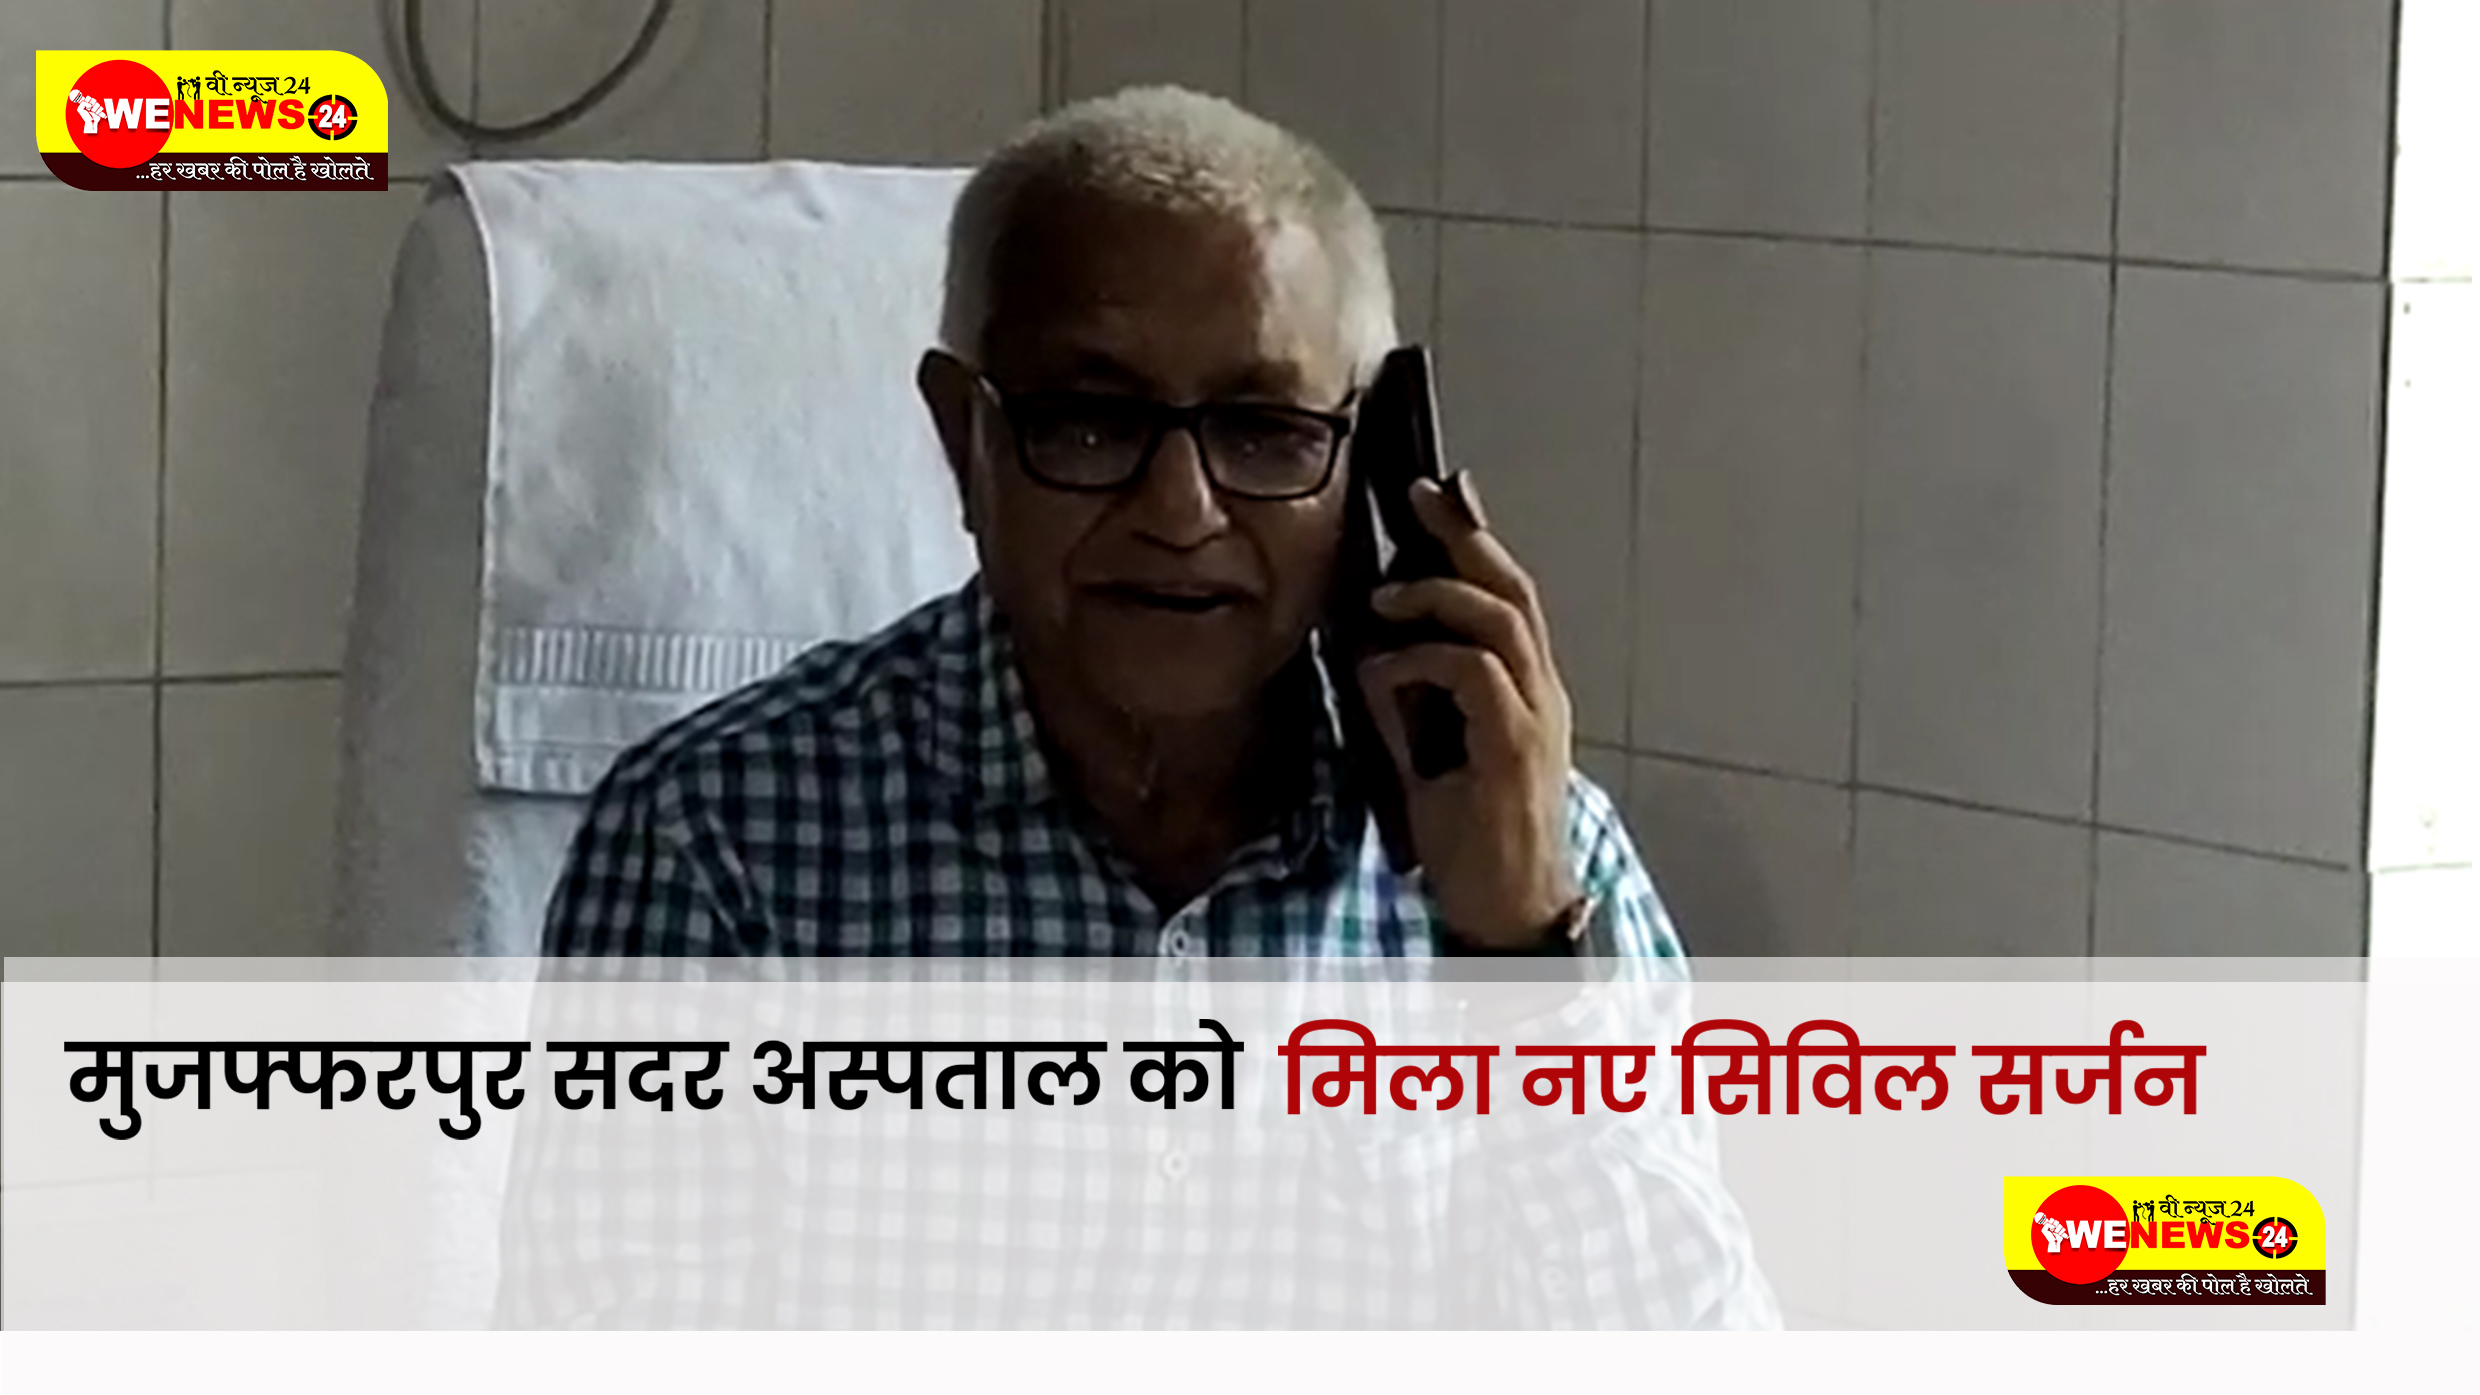  मुजफ्फरपुर सदर अस्पताल में नये सिविल सर्जन उमेश चंद्र शर्मा ने पदभार संभाला।